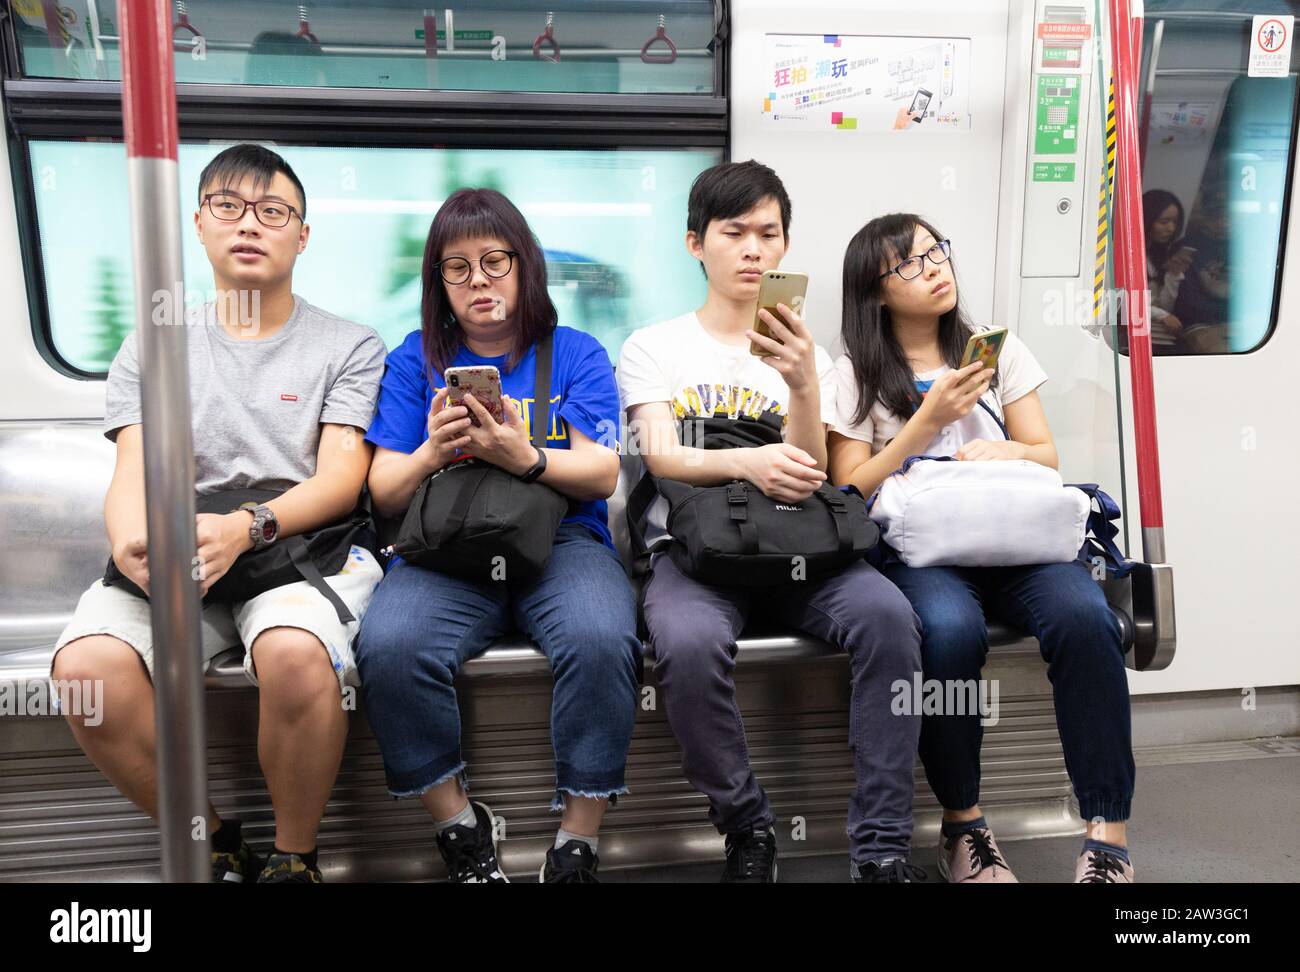 Hong Kong Lifestyle; Hong Kong Mass transit Railway - les gens locaux assis dans un intérieur de transport, Hong Kong MTR, Hong Kong Asie Banque D'Images